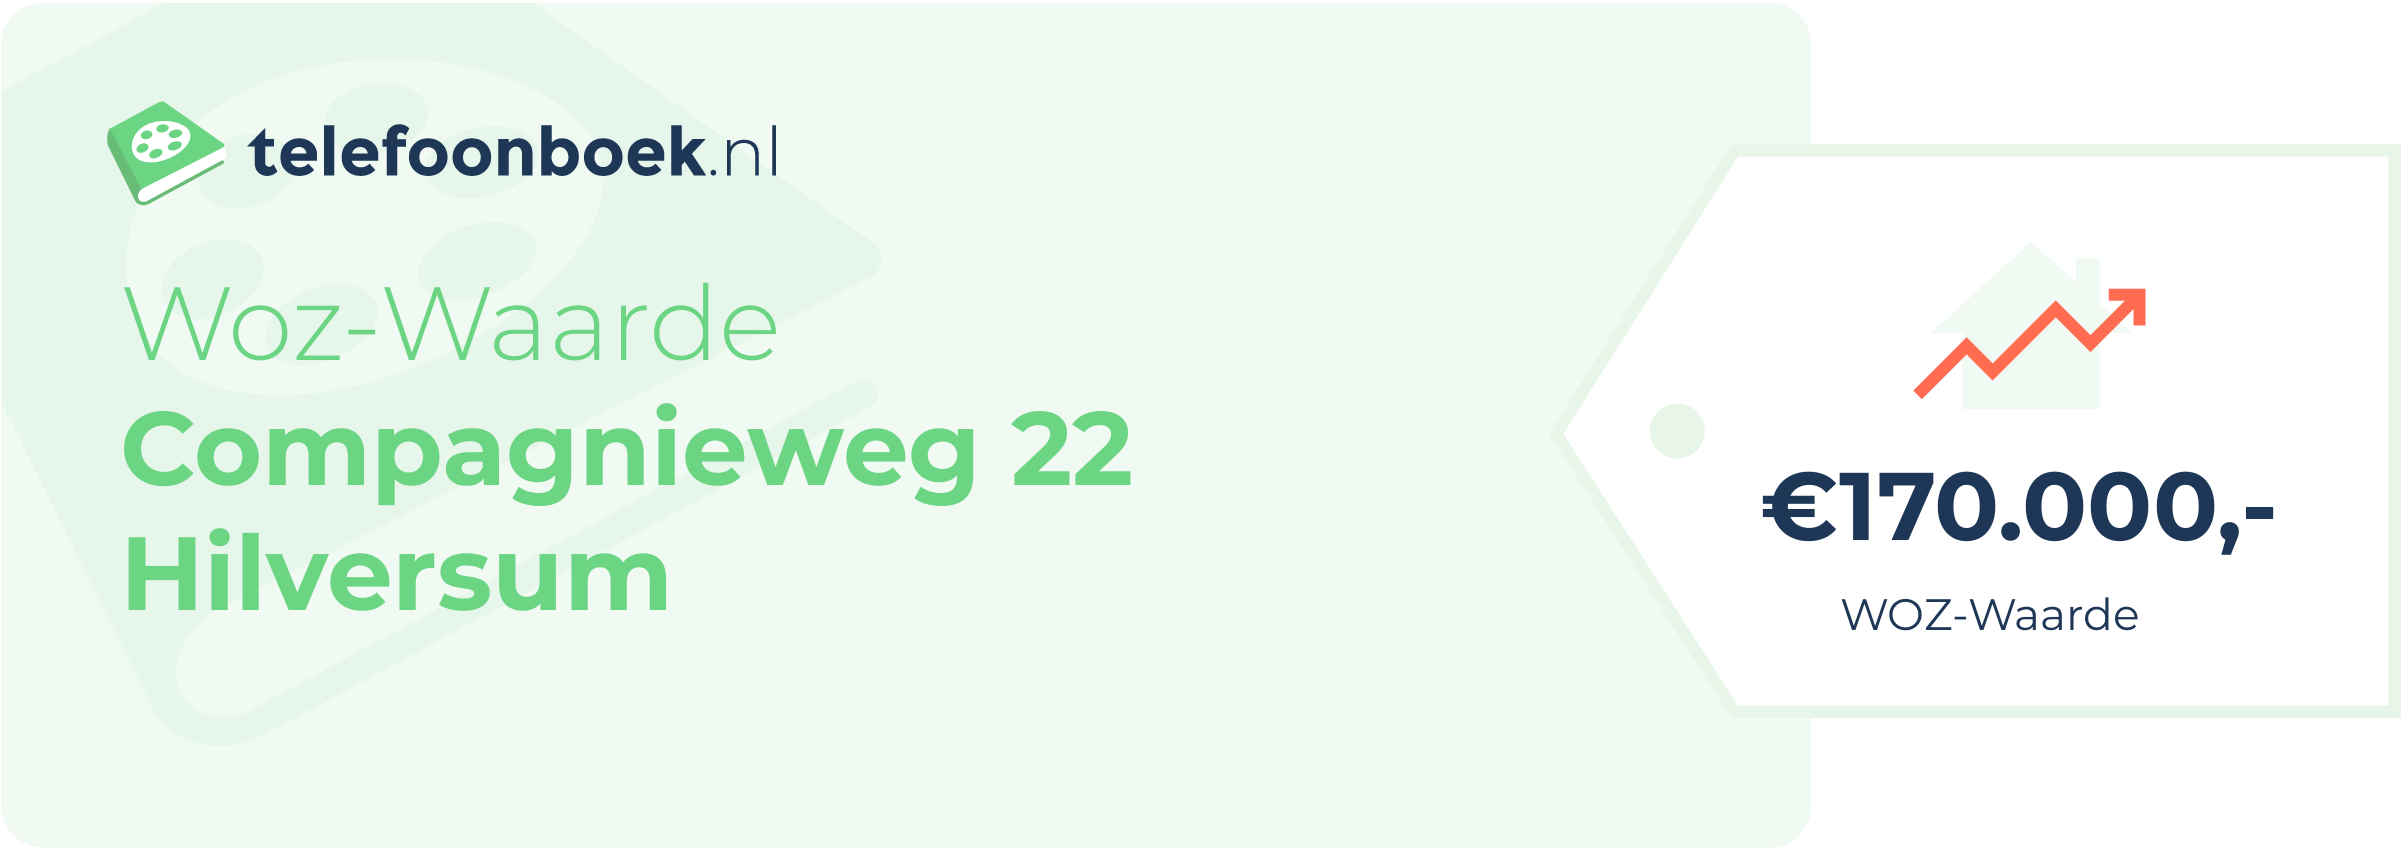 WOZ-waarde Compagnieweg 22 Hilversum